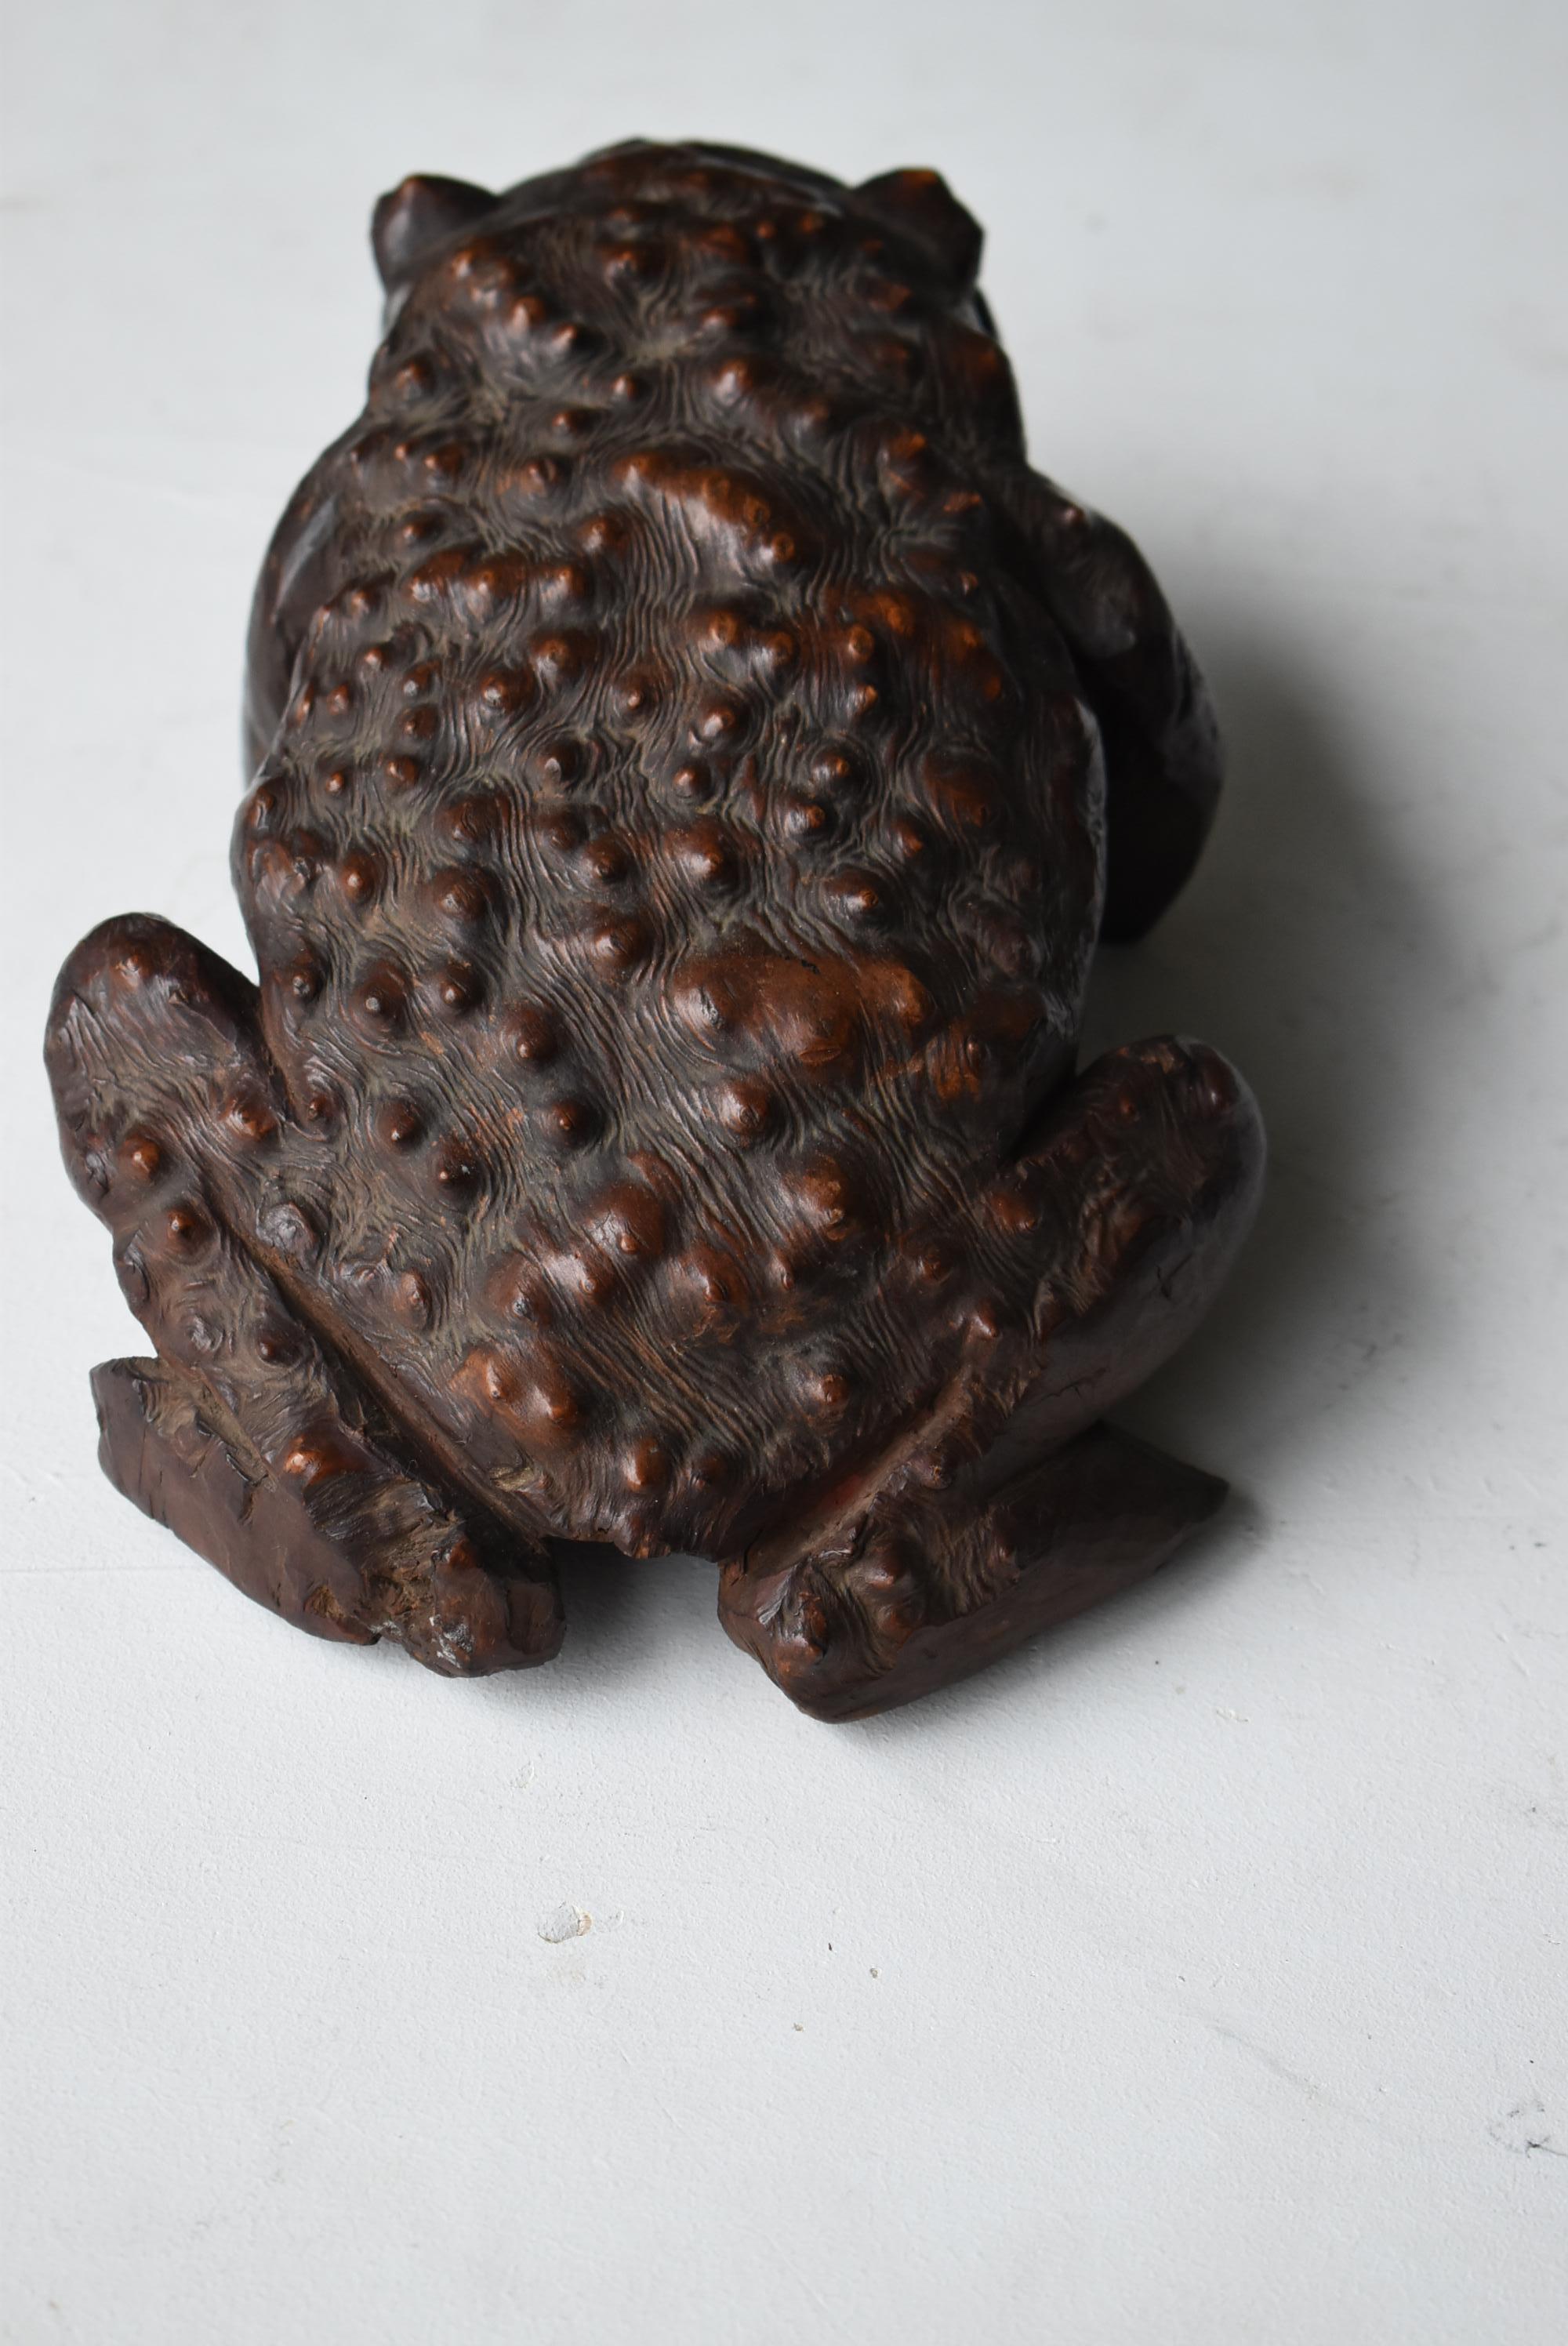 Japanese Antique Wood Carving Frog 1900s-1940s / Sculpture Wabi Sabi  For Sale 6